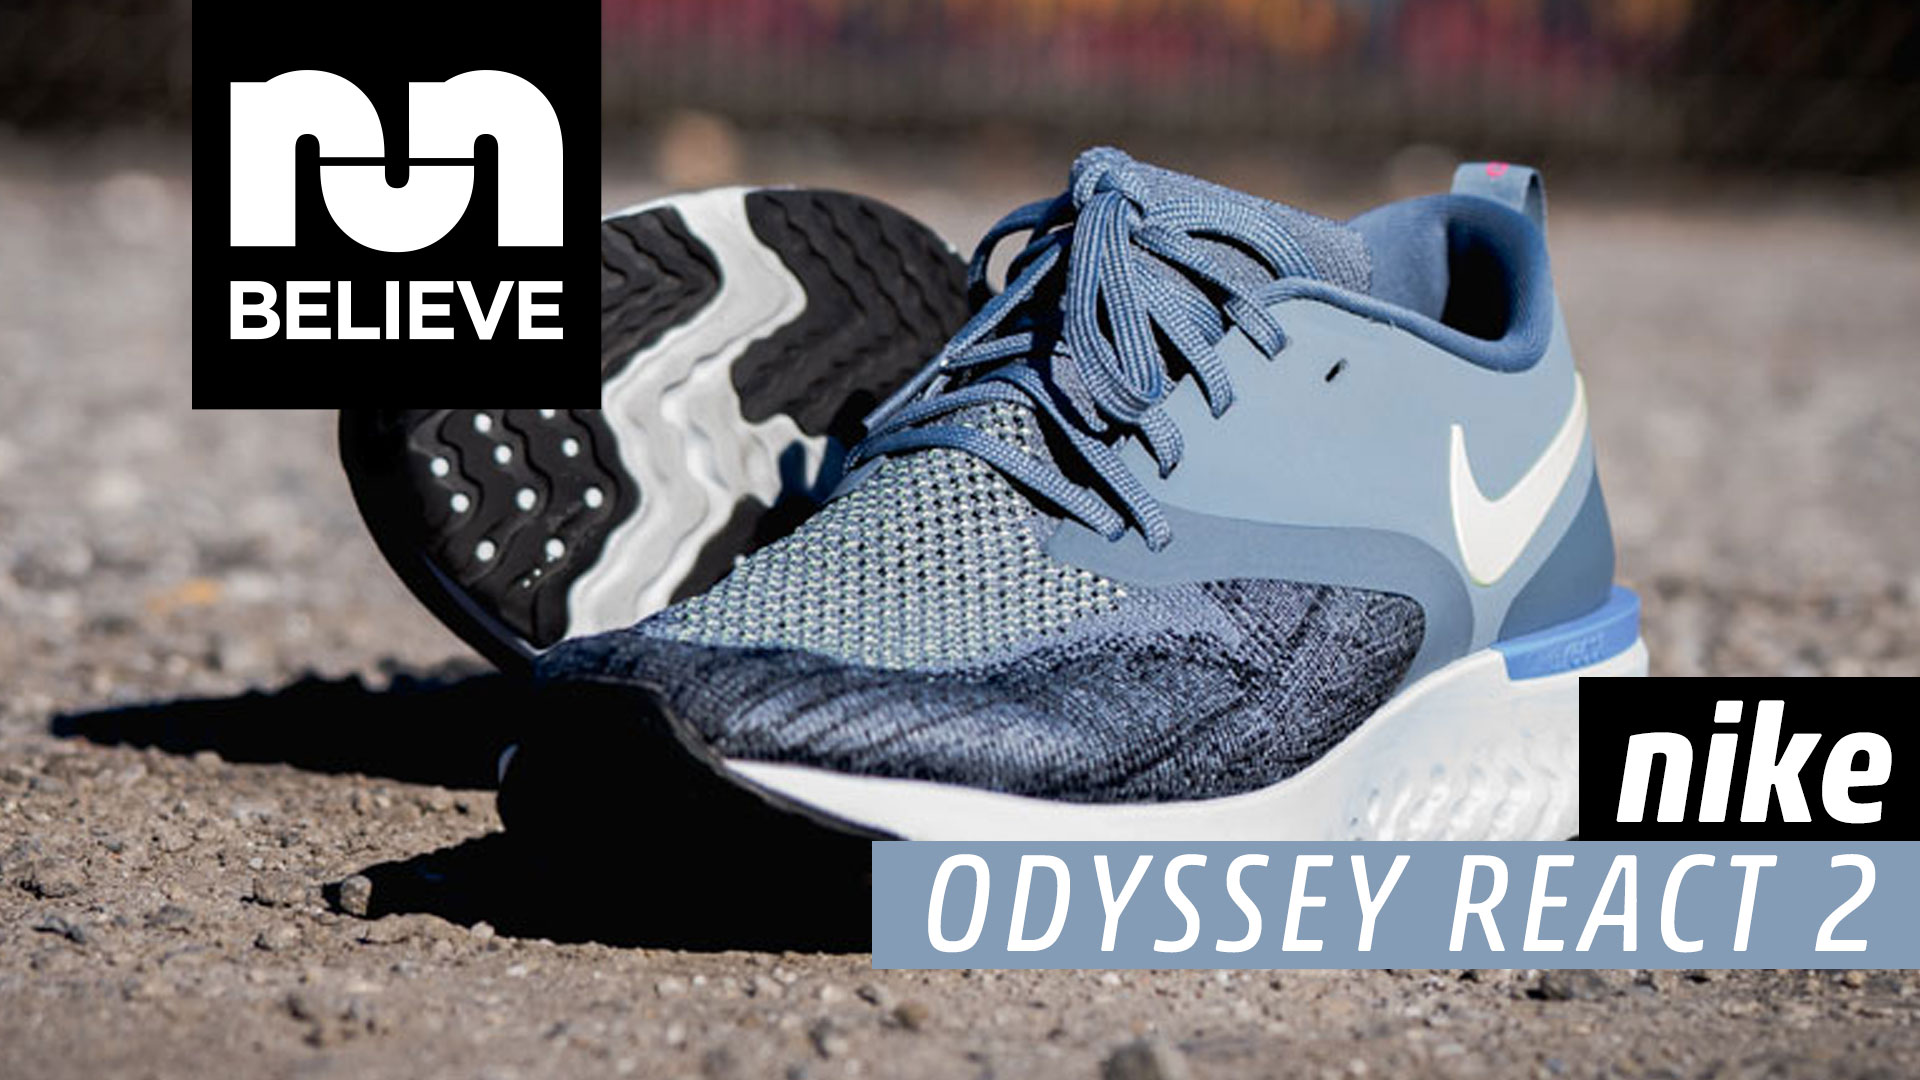 Nike Odyssey React Flyknit 2 Video 